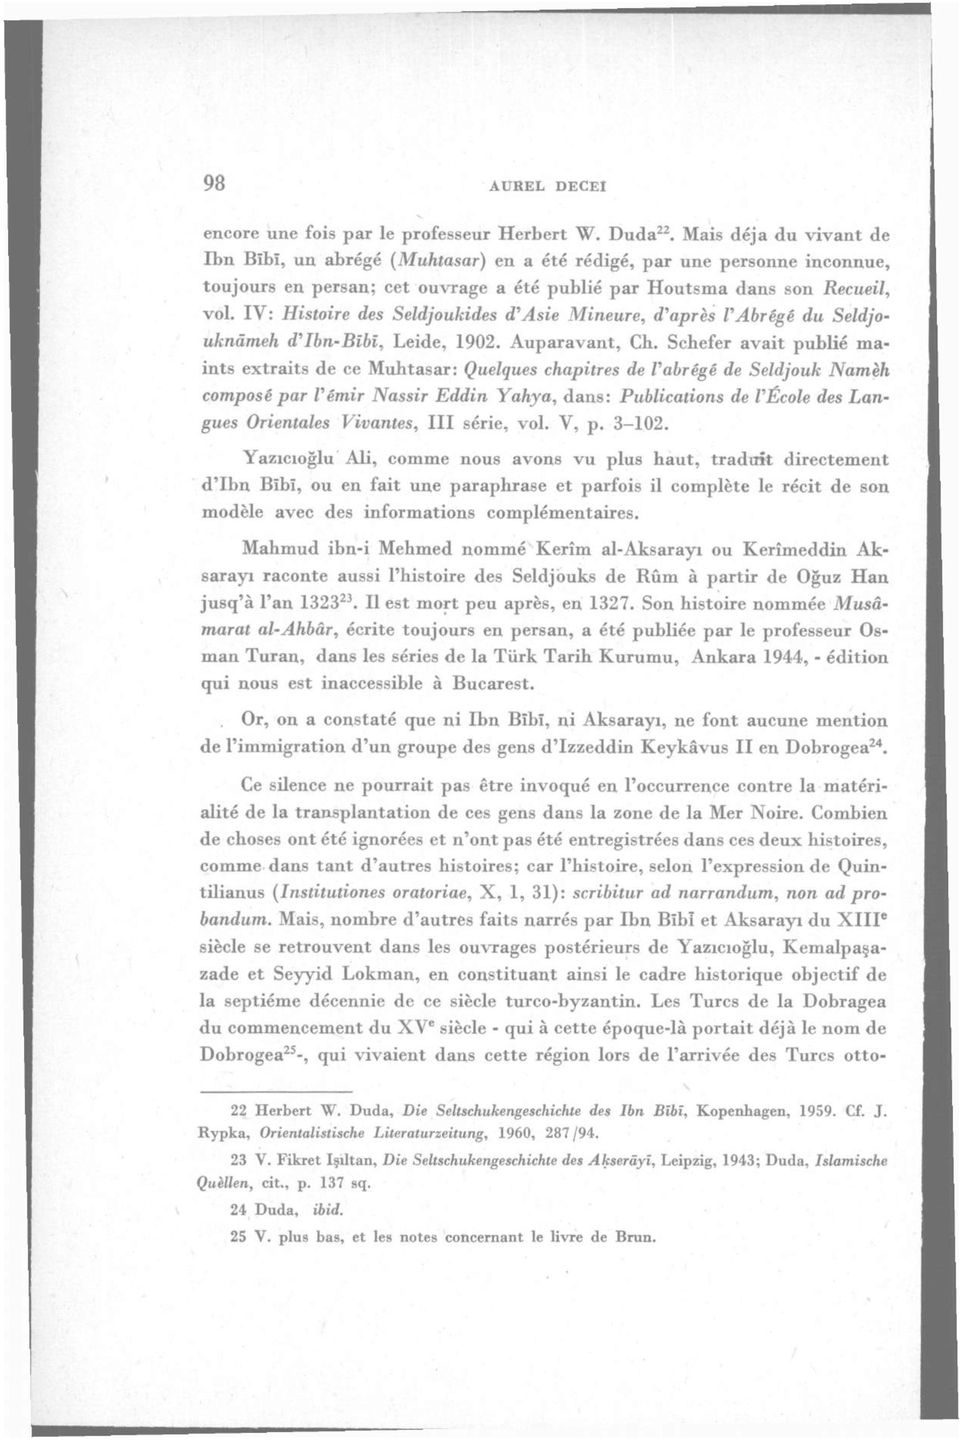 IV: Histoire des Seldjoukides d'asie Mineure, d'apres VAbrege du Seldjouknâmeh d'ibn-bibi, Leide, 1902. Auparavant, Cb.